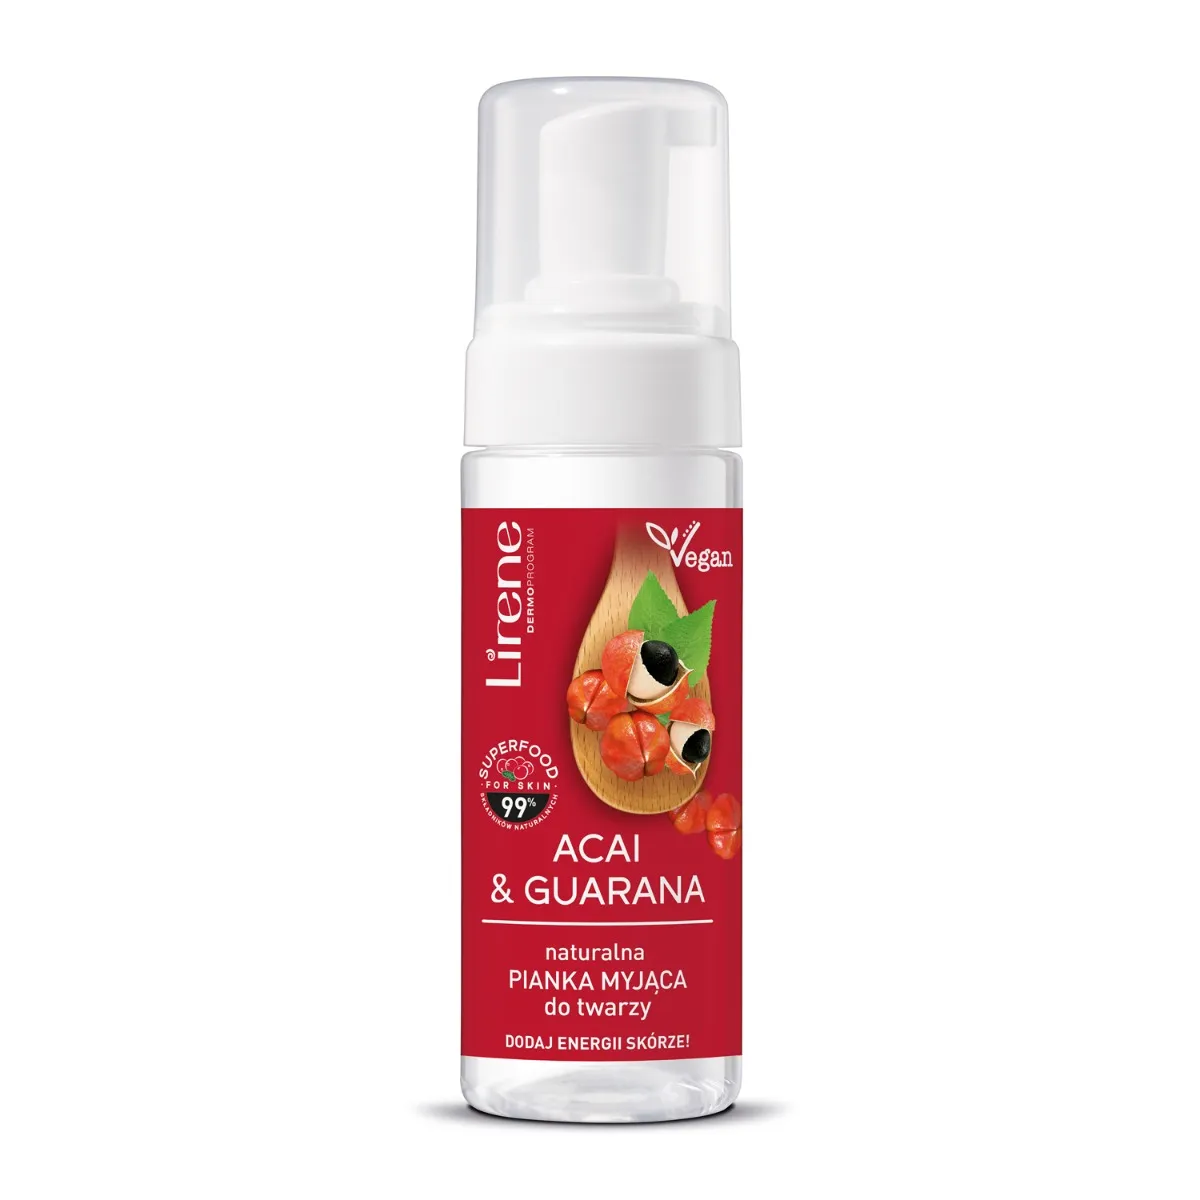 Lirene Superfood Oczyszczanie naturalna pianka myjąca do twarzy Acai i guarana, 150 ml 